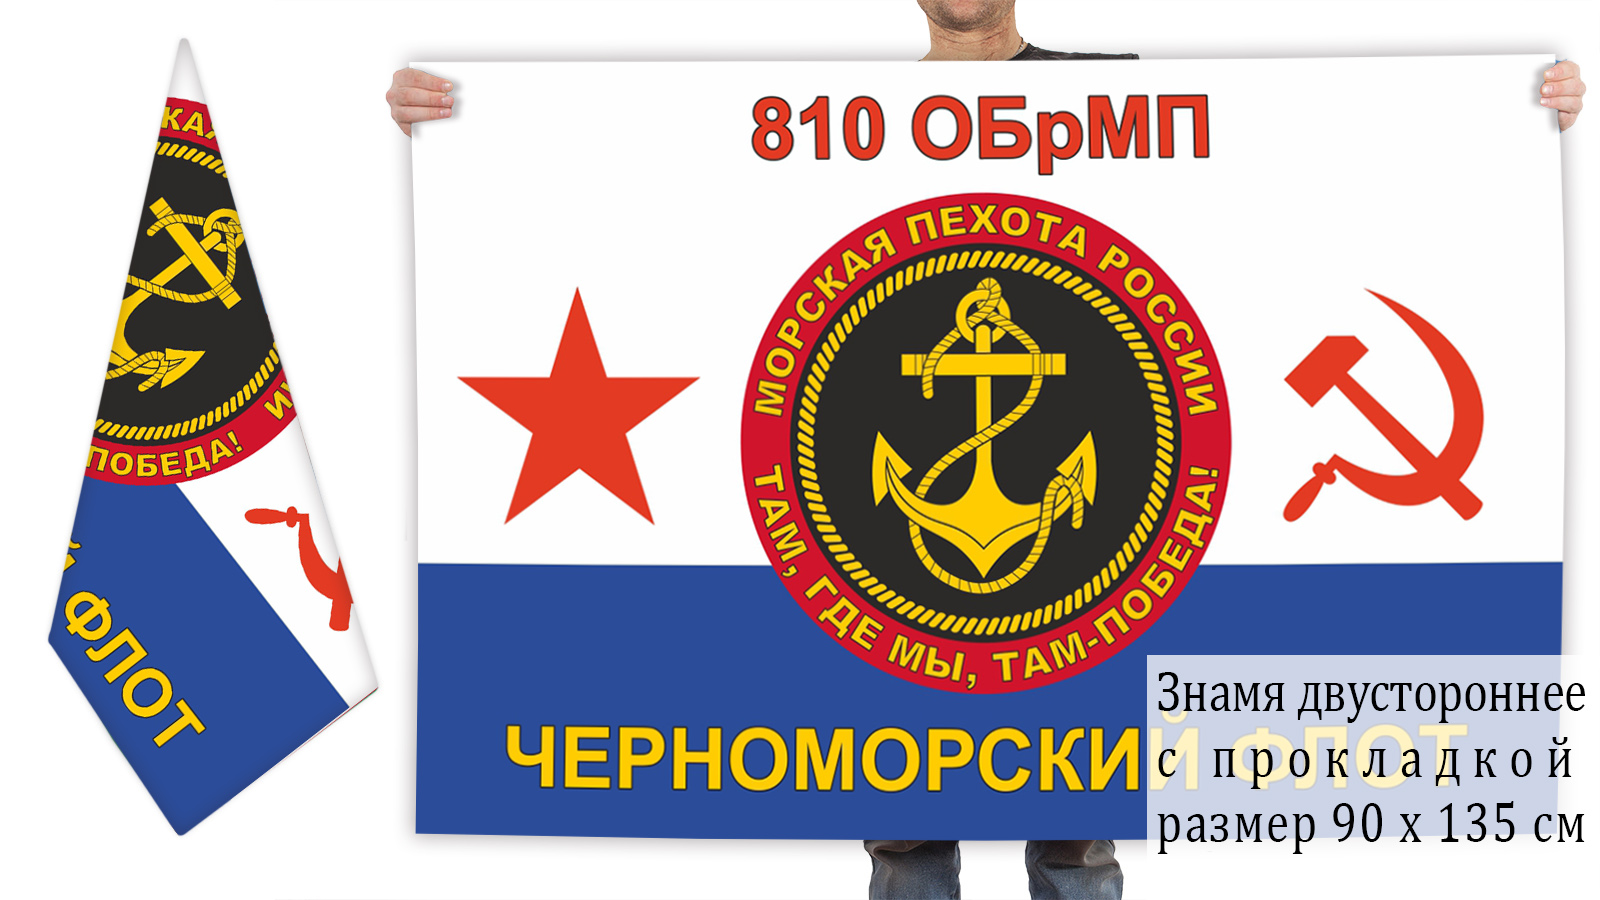 Двусторонний флаг 810 отдельной бригады морпехов ЧФ